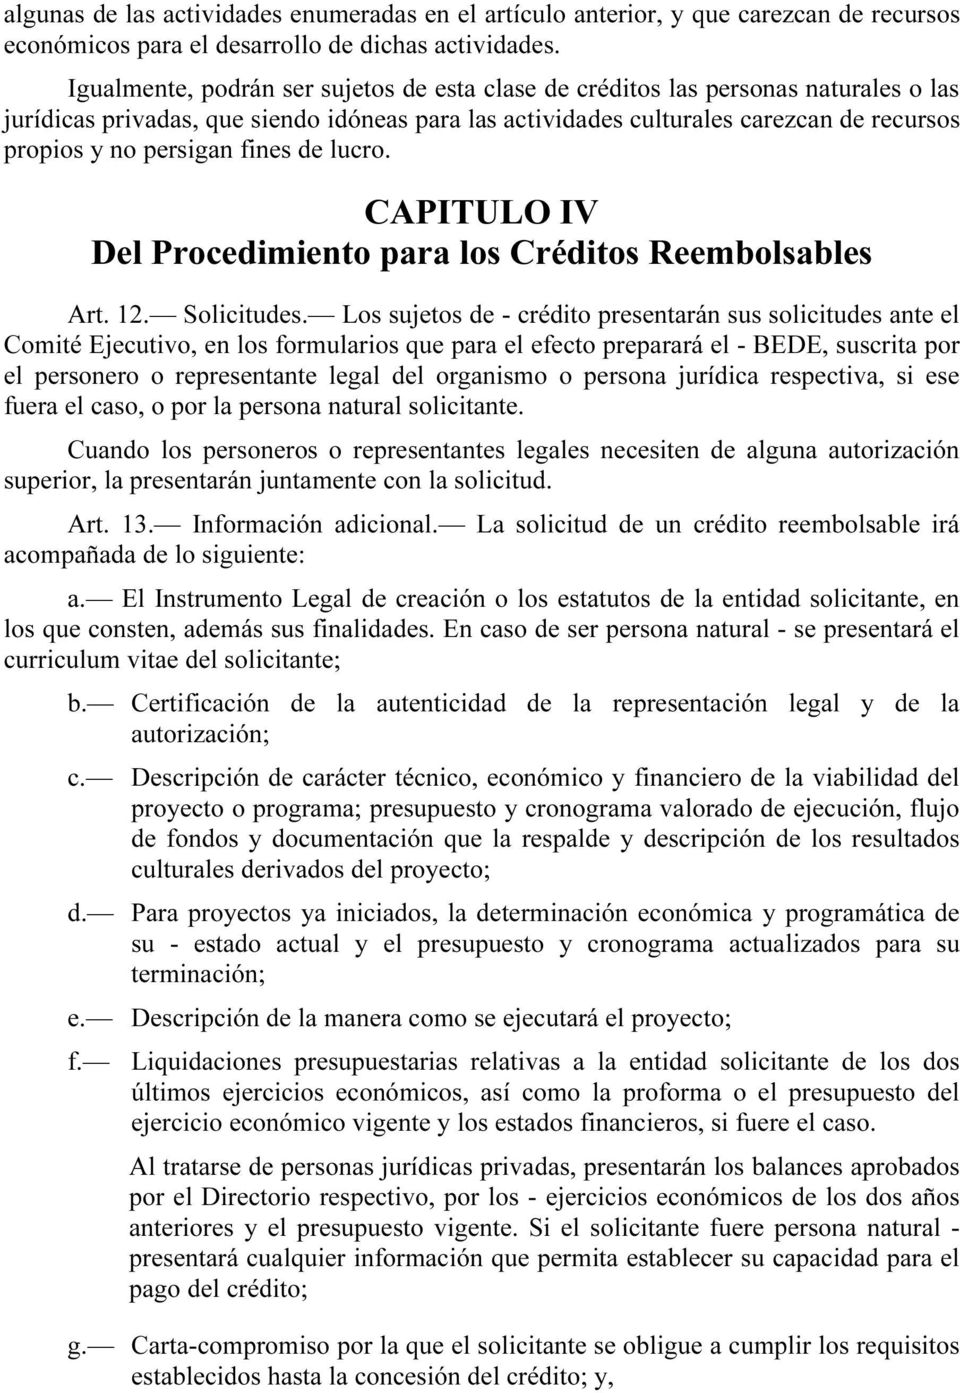 fines de lucro. 3BCAPITULO IV Del Procedimiento para los Créditos Reembolsables Art. 12. Solicitudes.